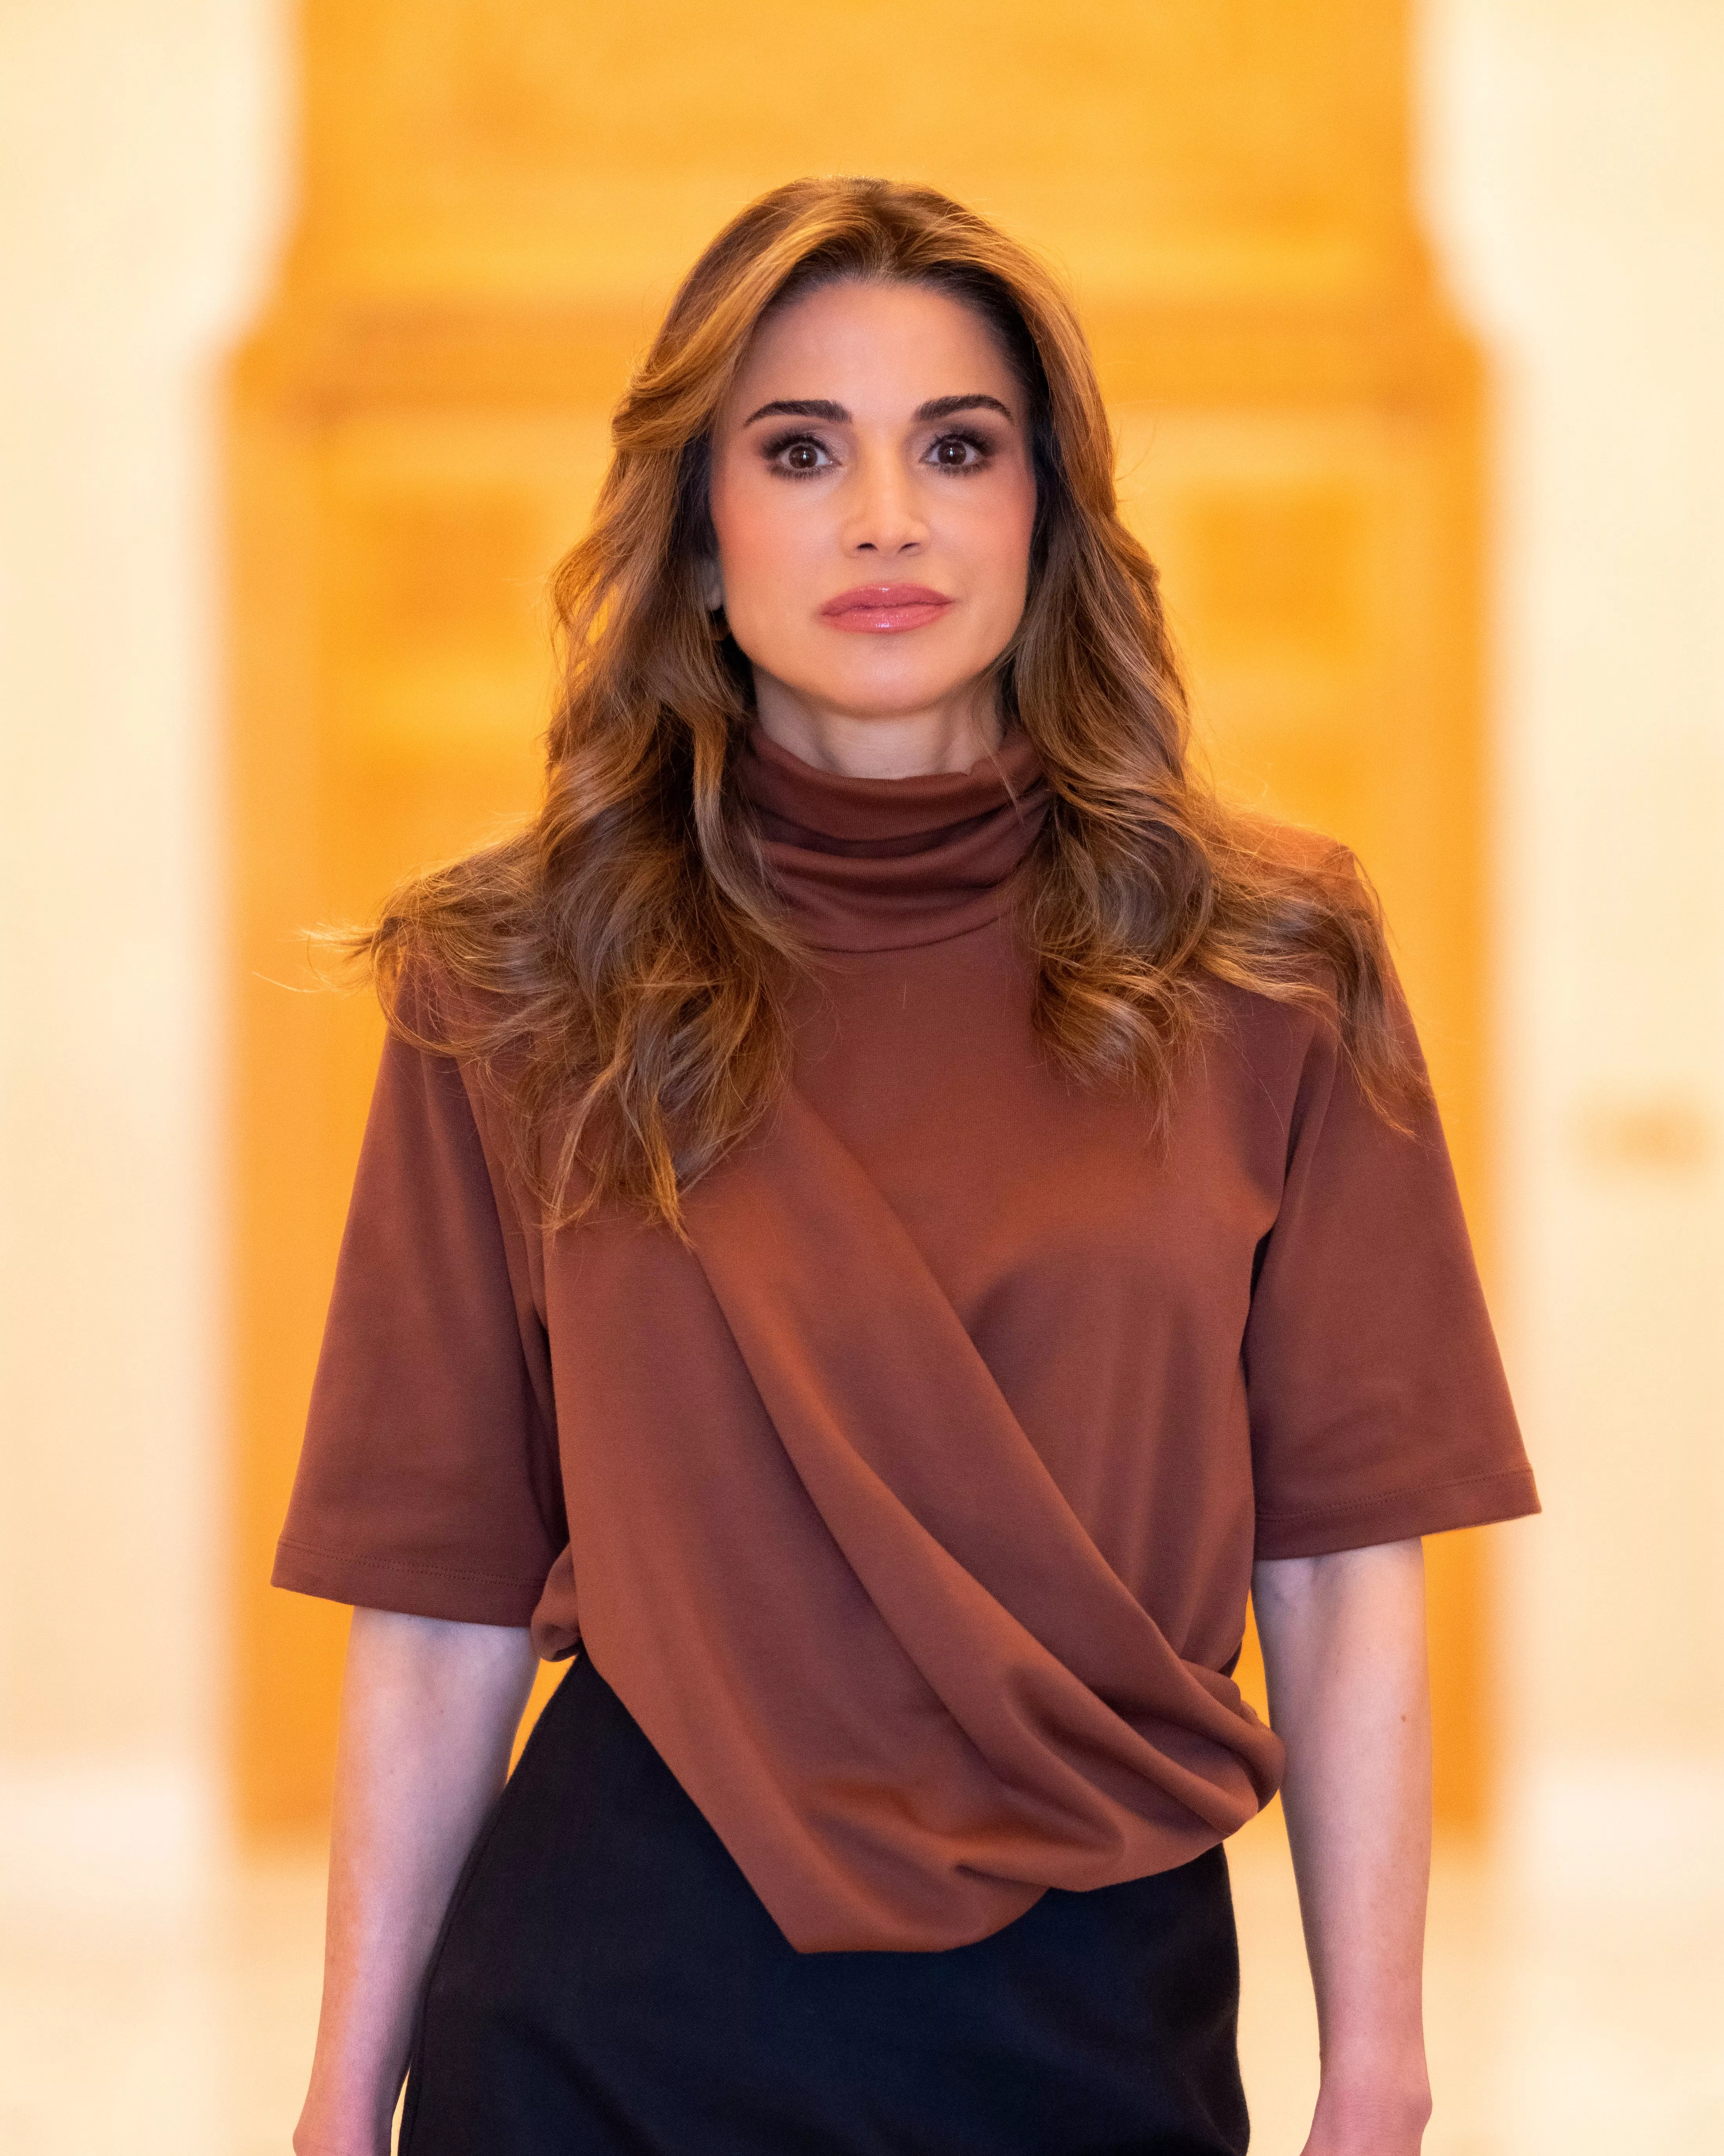 الملكة رانيا جعلتنا نعشق الأسلوب الكلاسيكي في إطلالاتها في عُمان